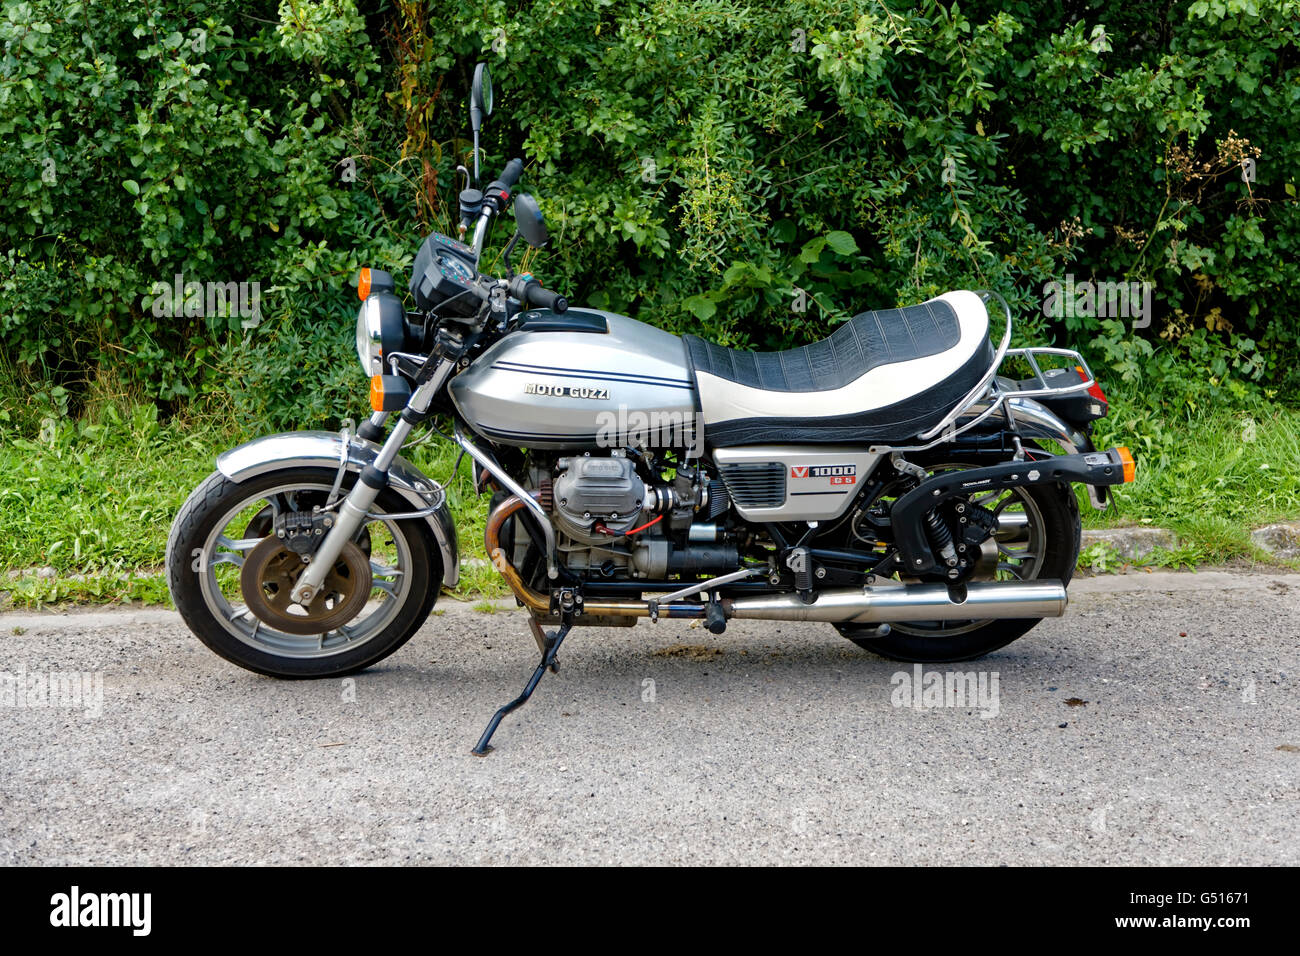 Moto Guzzi V1000 G5 Motorcycle Stock Photo - Alamy